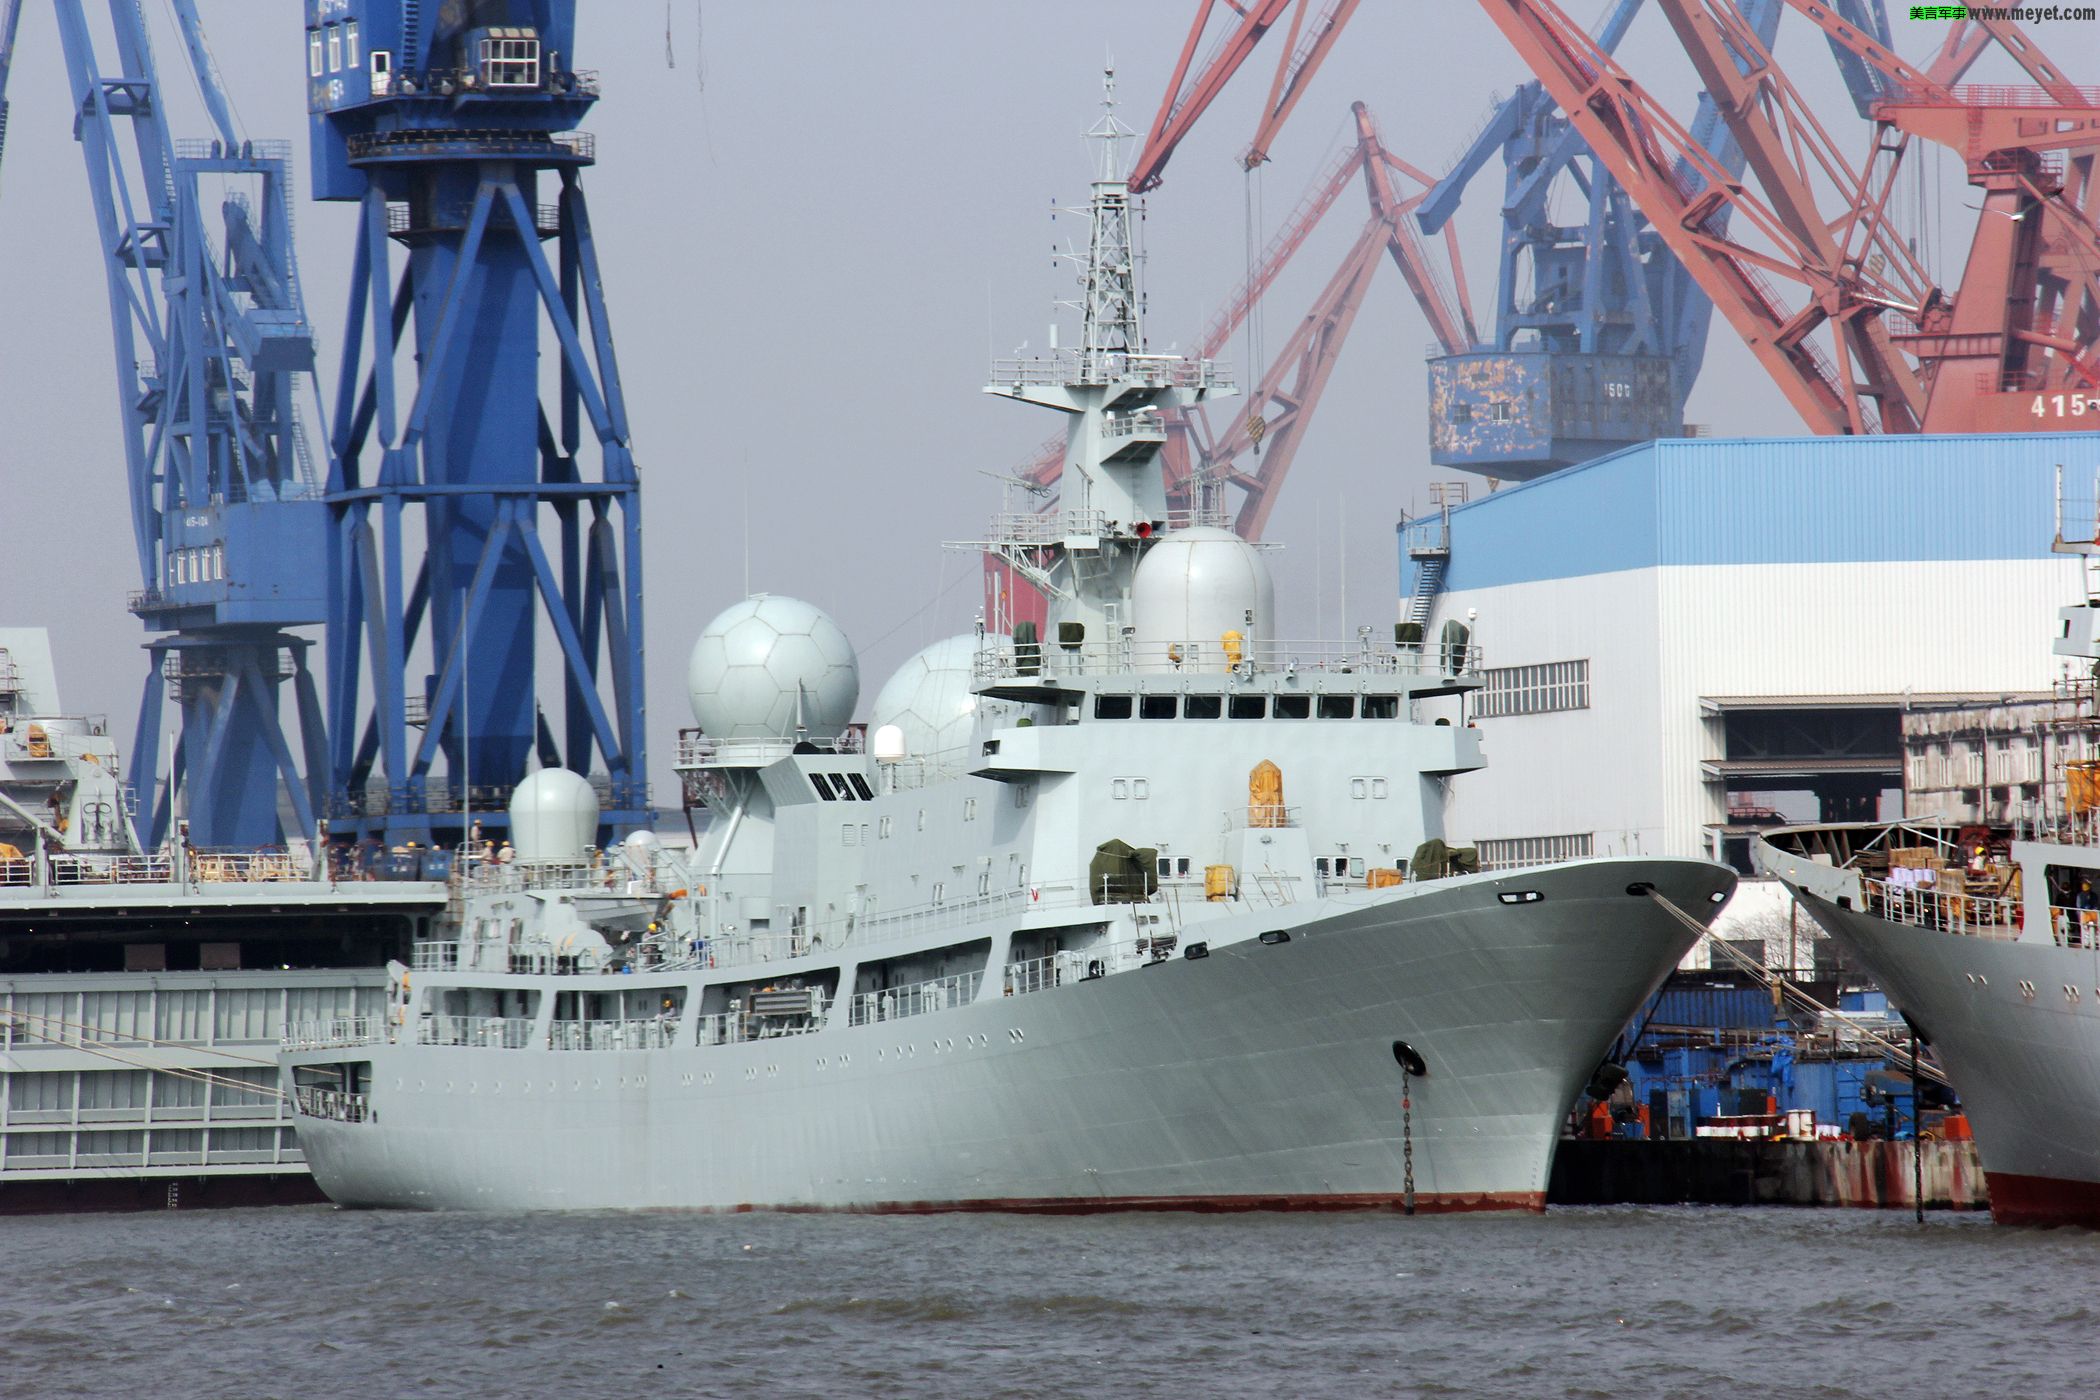 海军858电子侦察船图片图片